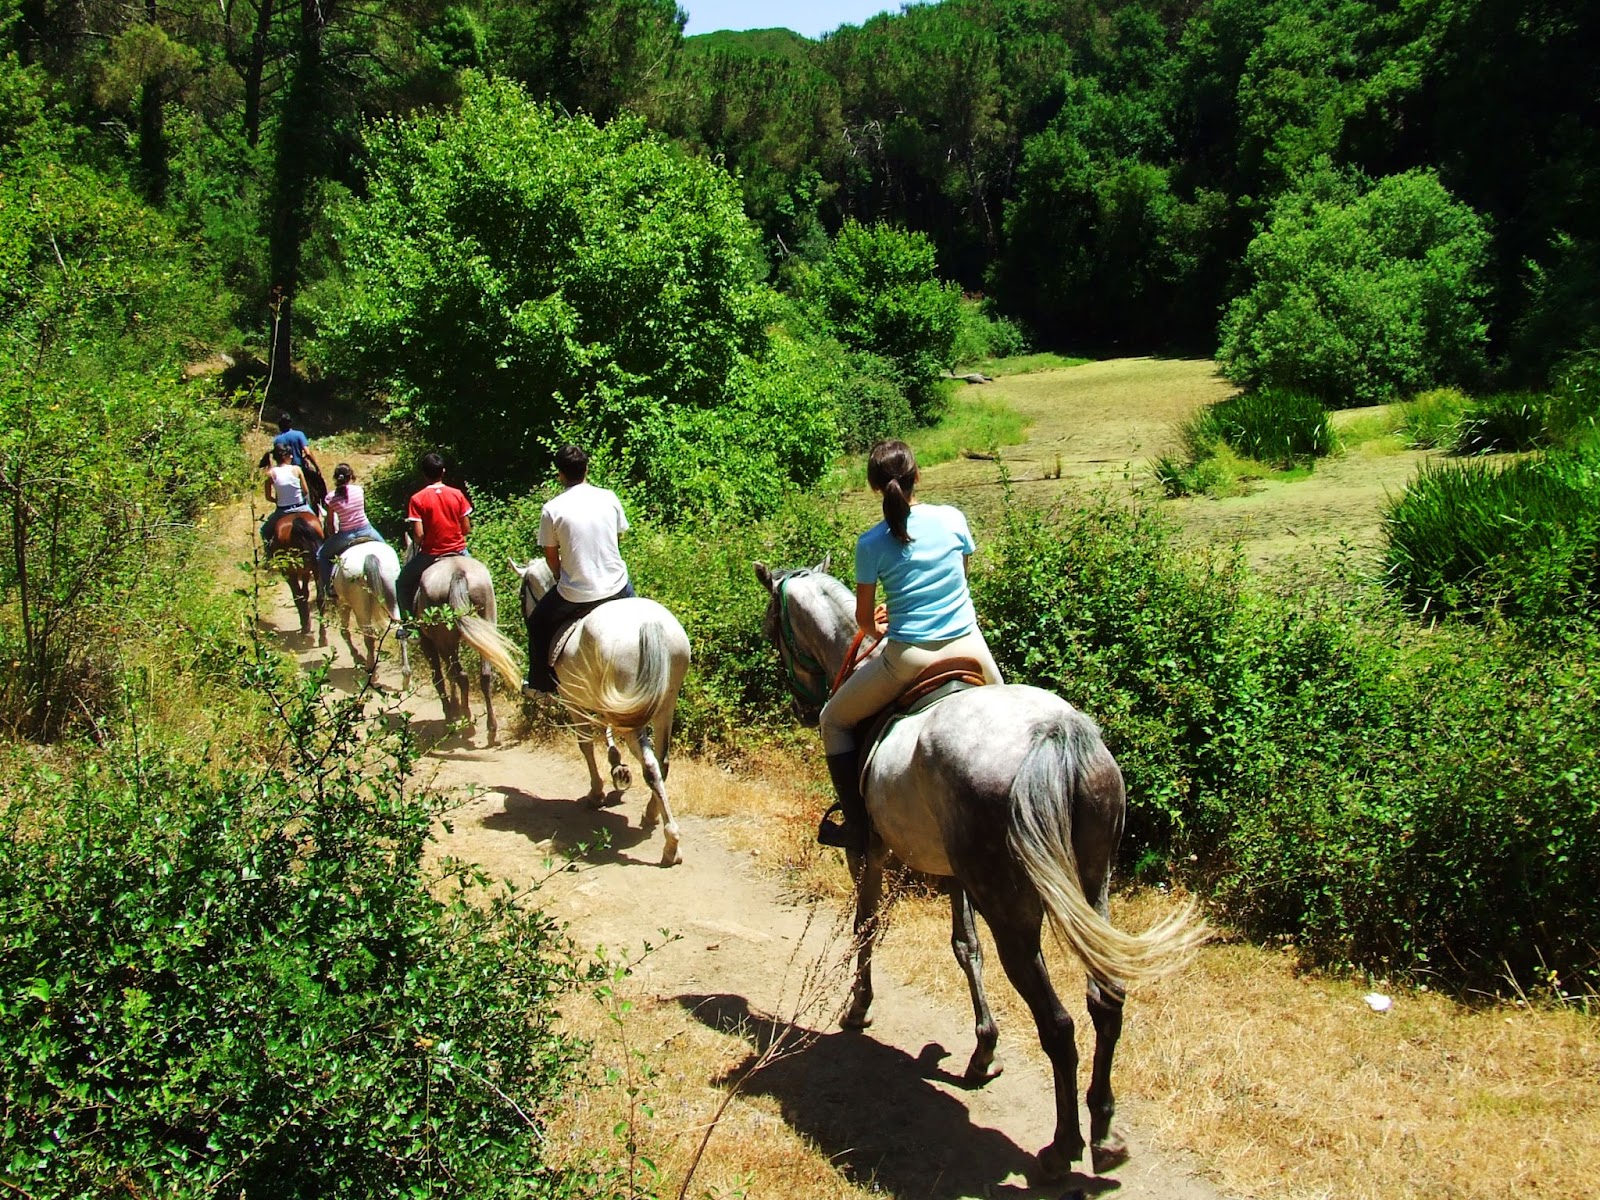 Grupo de 6 turistas andando a cavalo. Eles passam por um caminho de terra batida trilhado entre áreas de vegetação verde